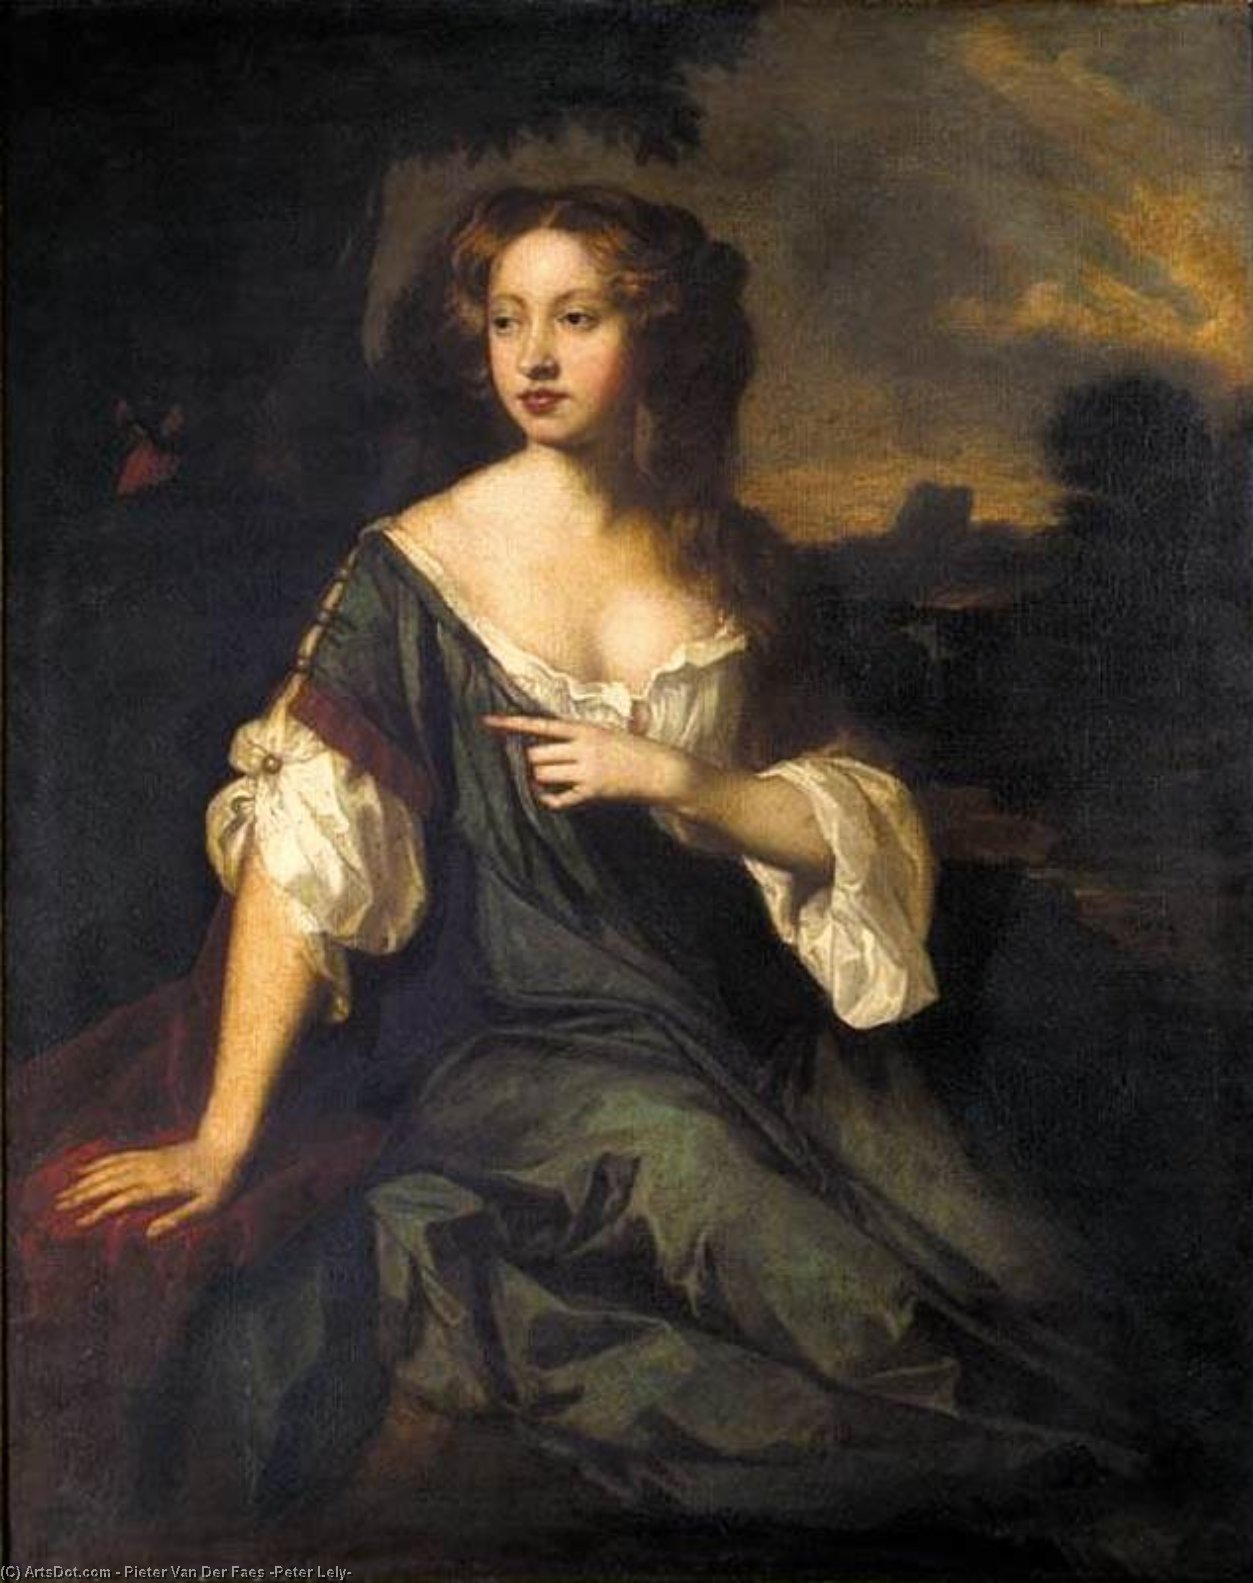 WikiOO.org - אנציקלופדיה לאמנויות יפות - ציור, יצירות אמנות Pieter Van Der Faes (Peter Lely) - Portrait of Lucy Brydges